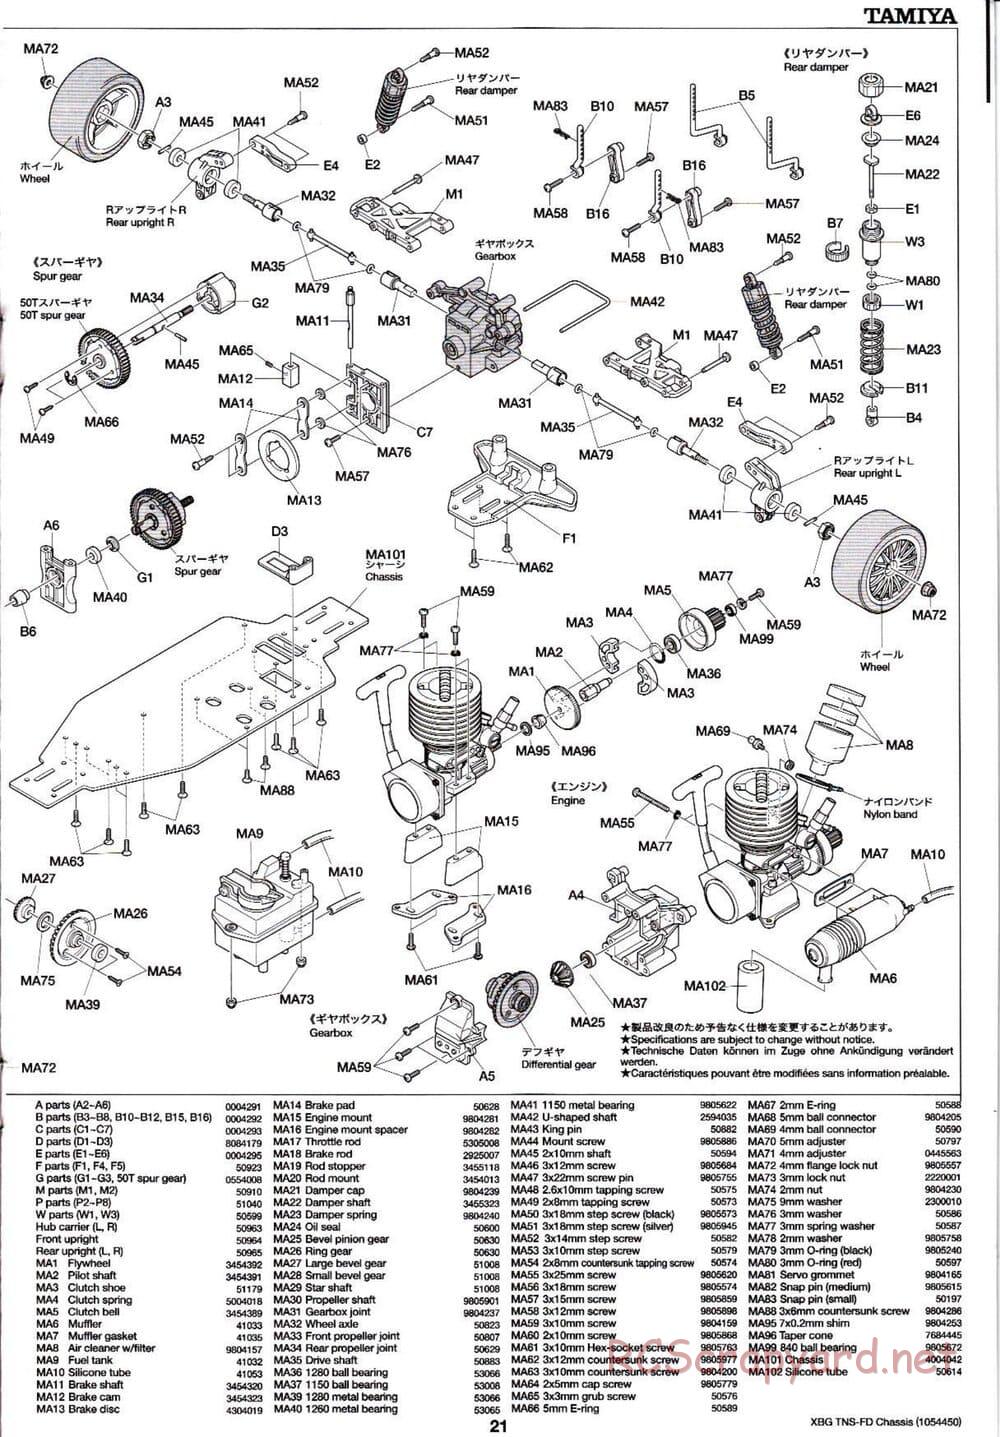 Tamiya - TNS-FD Chassis - Manual - Page 21